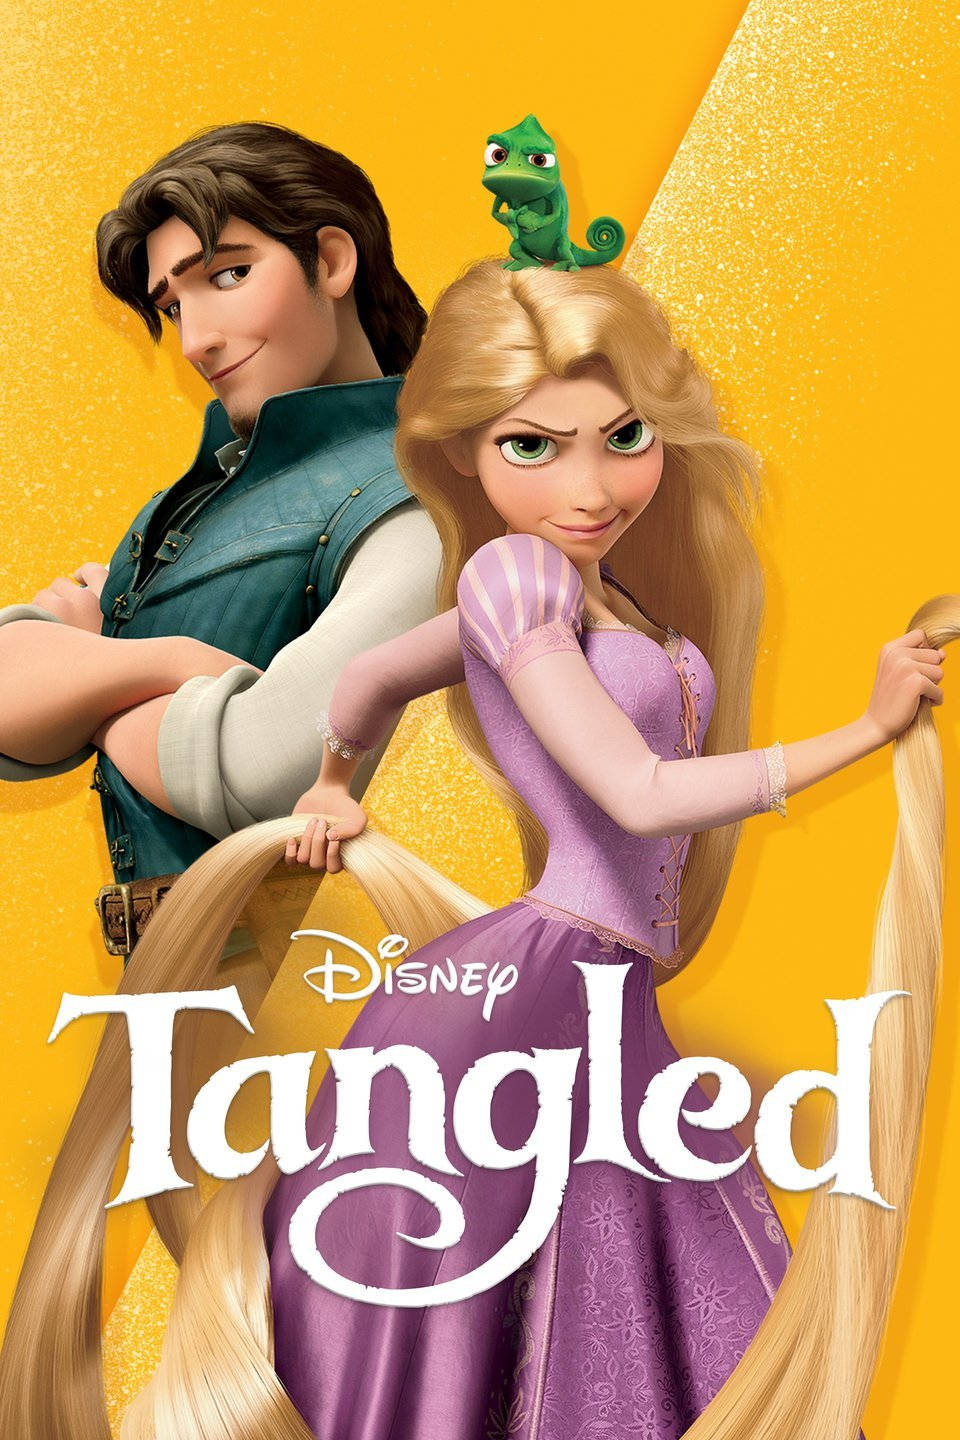 Disney Film Tangled Vibrant Poster Background